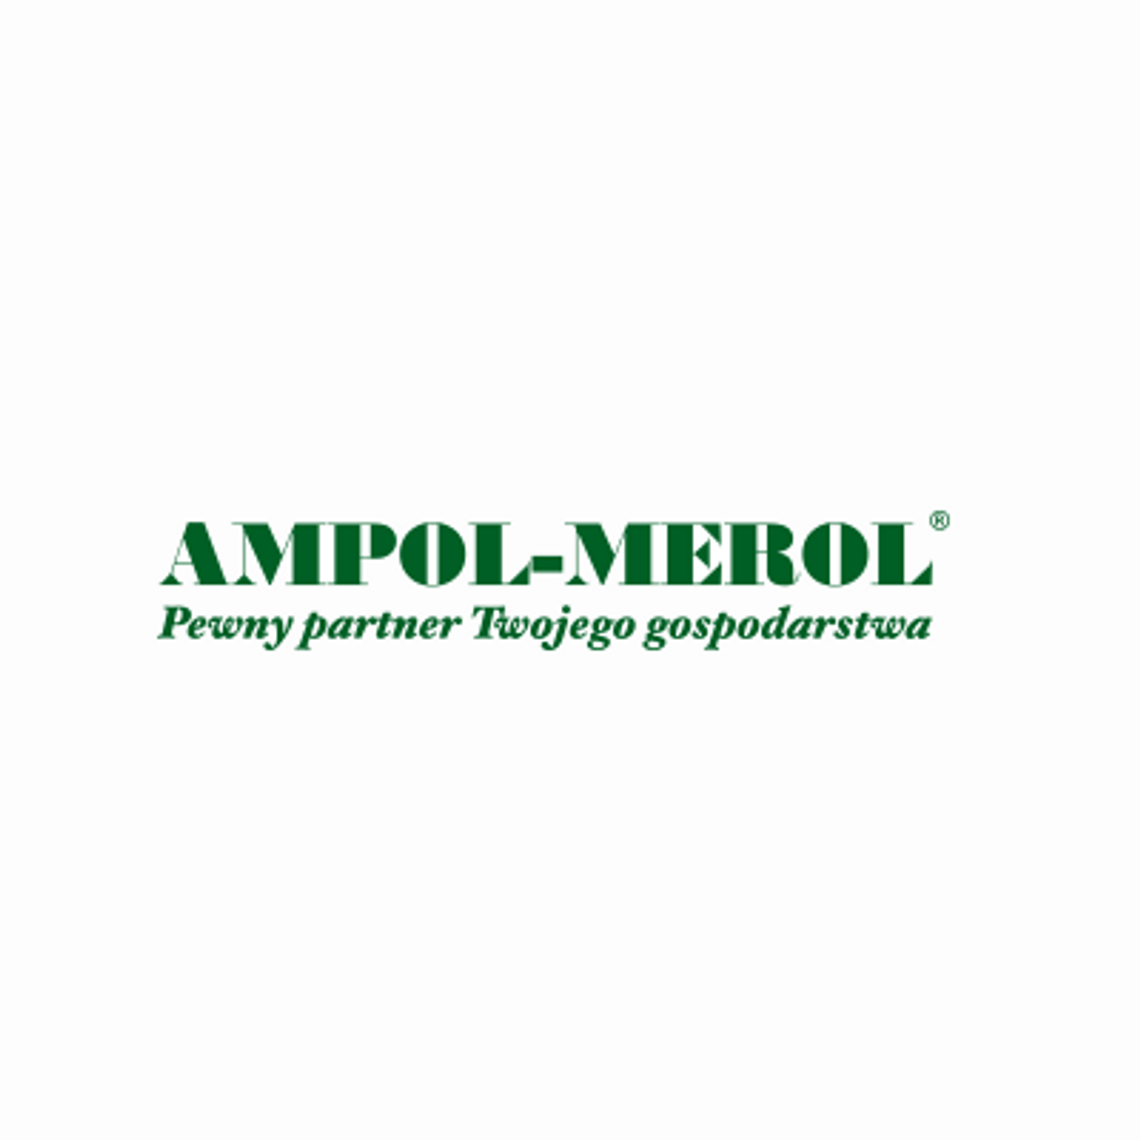 Ampol - Merol